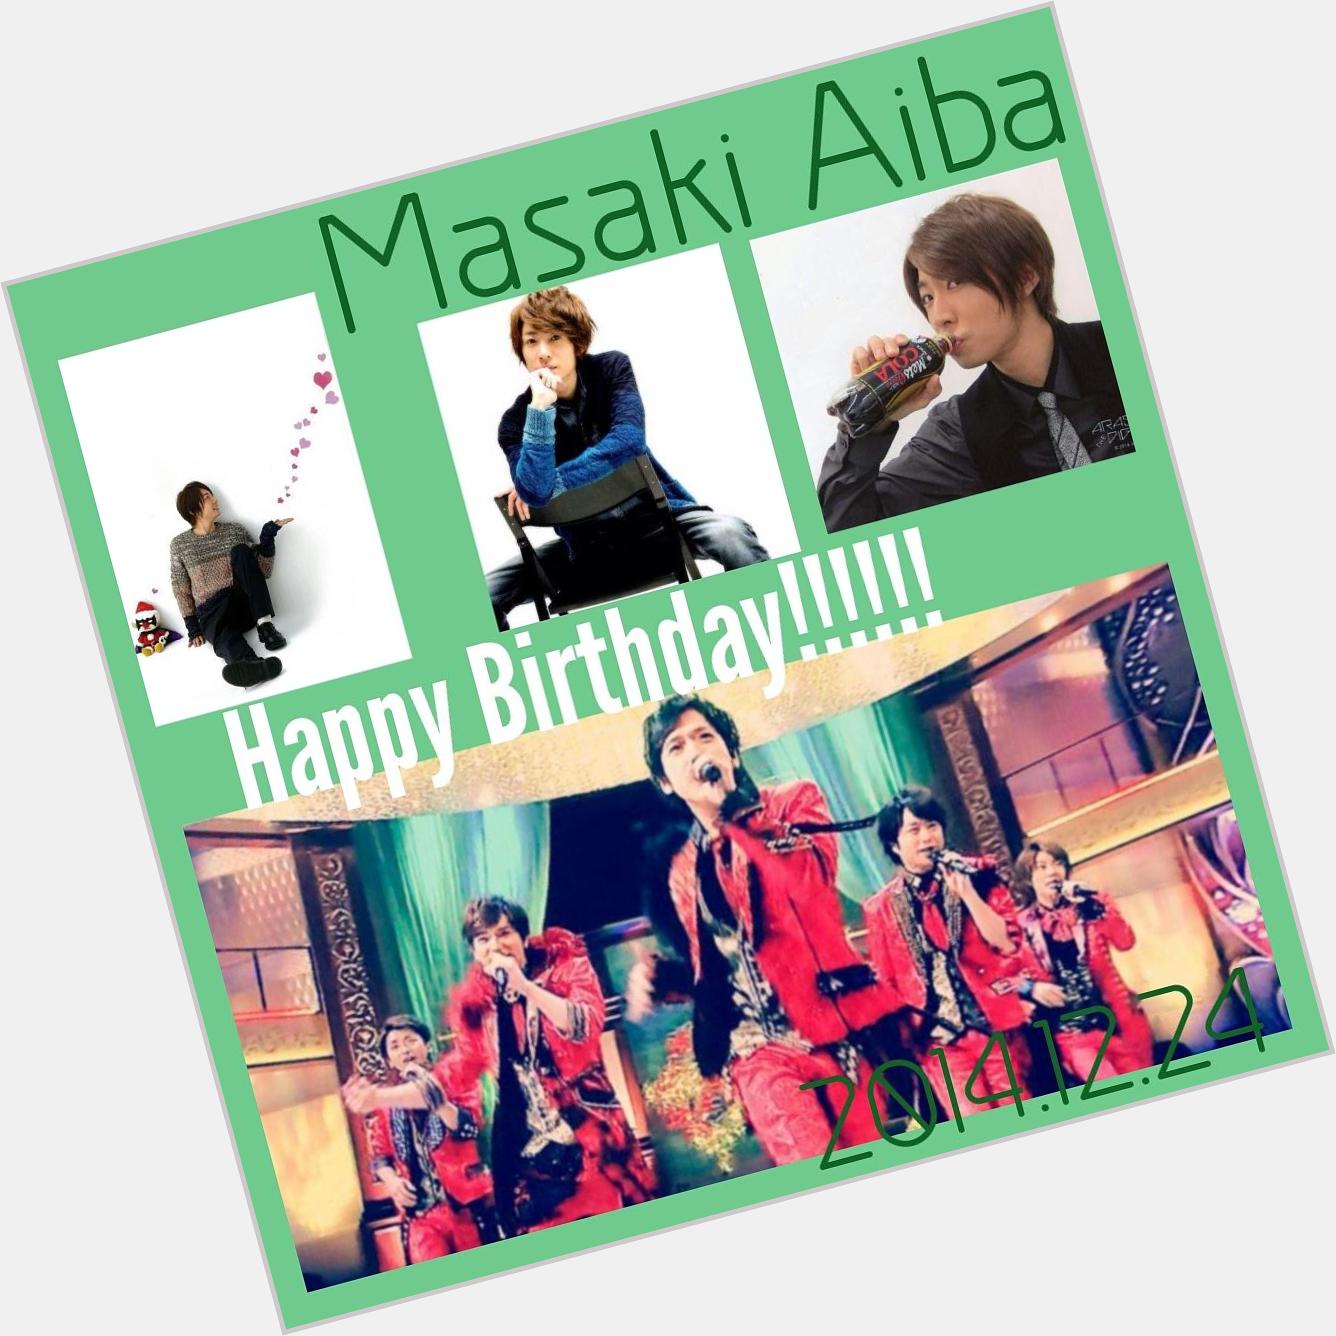   Happy Birthday!!! Masaki Aiba                                         